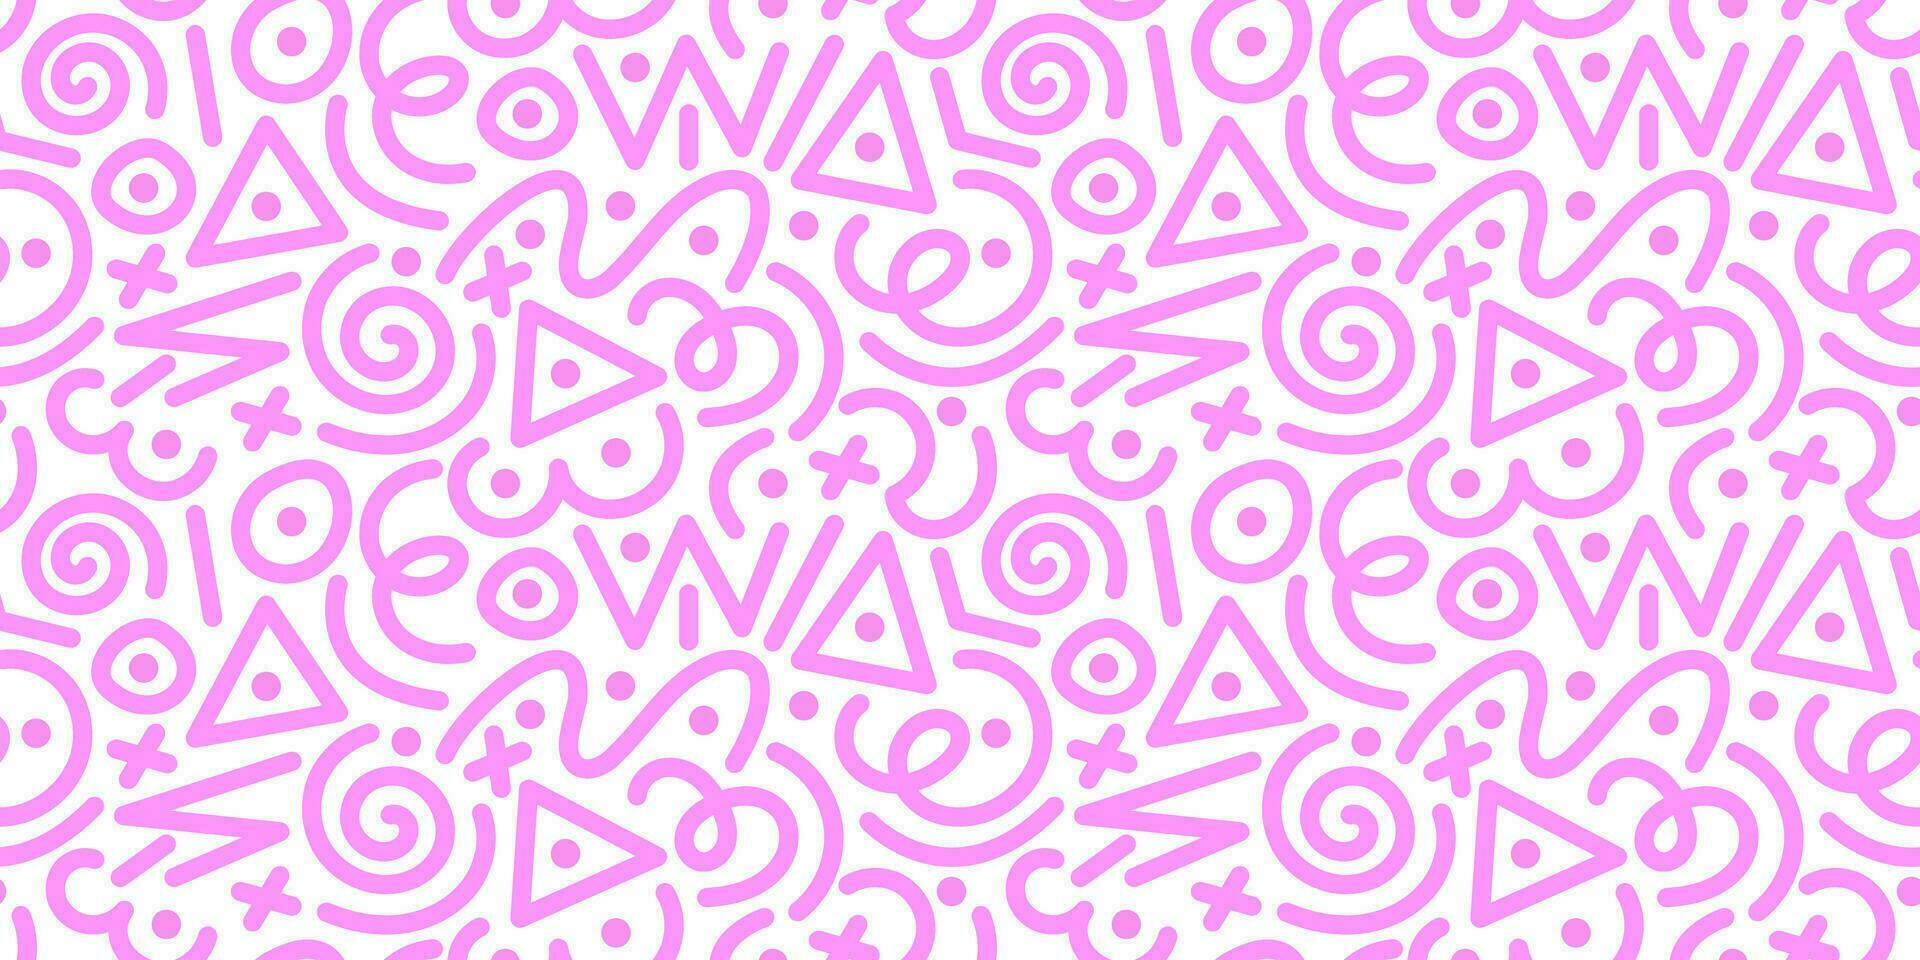 söt rosa sömlös mönster med olika rader och former. upprepa mönster i 90s stil för omslag papper, design. vektor stock illustration isolerat på vit bakgrund.